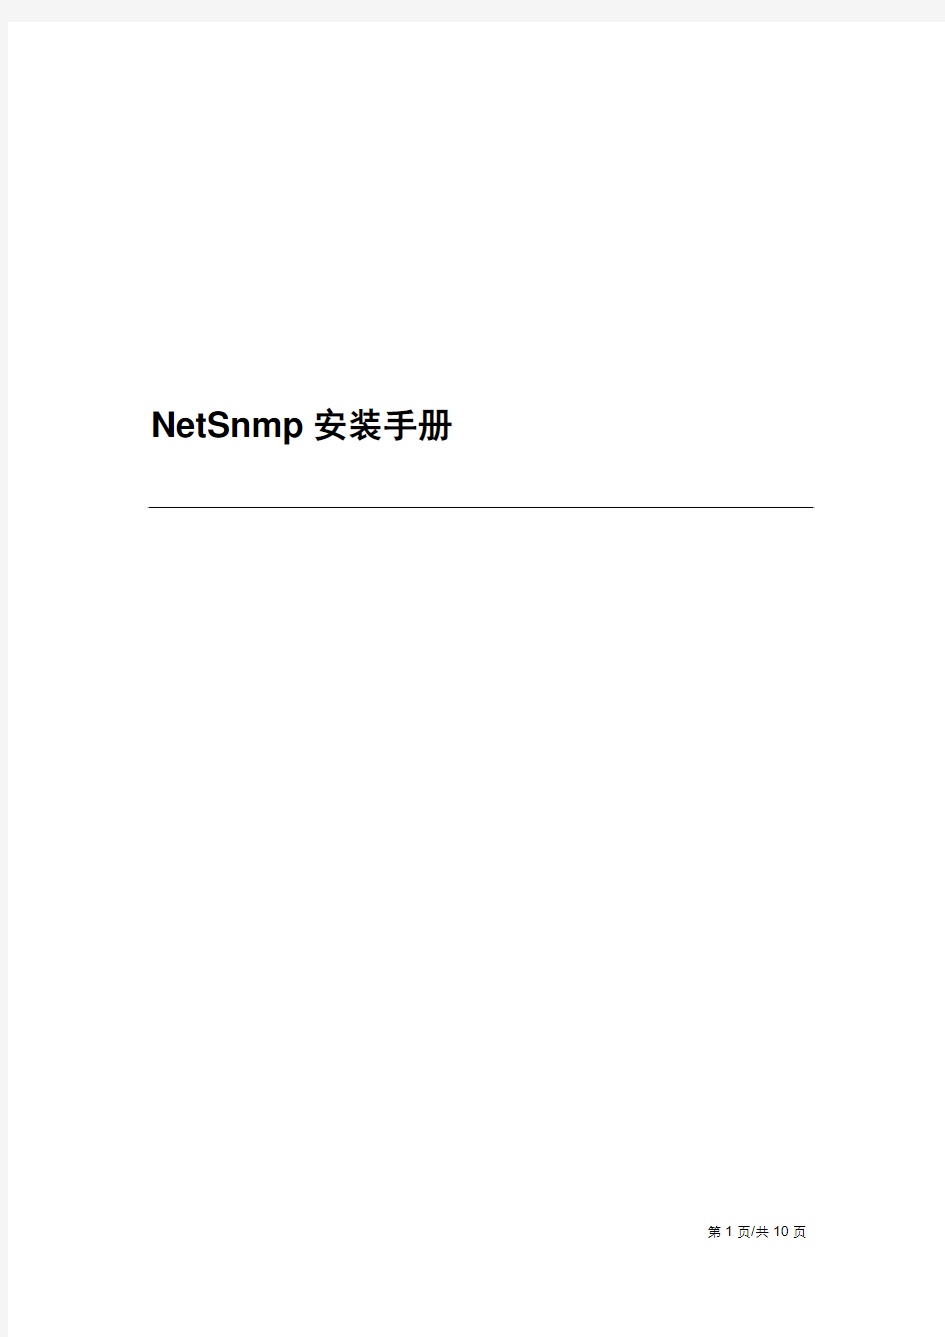 NetSnmp安装手册